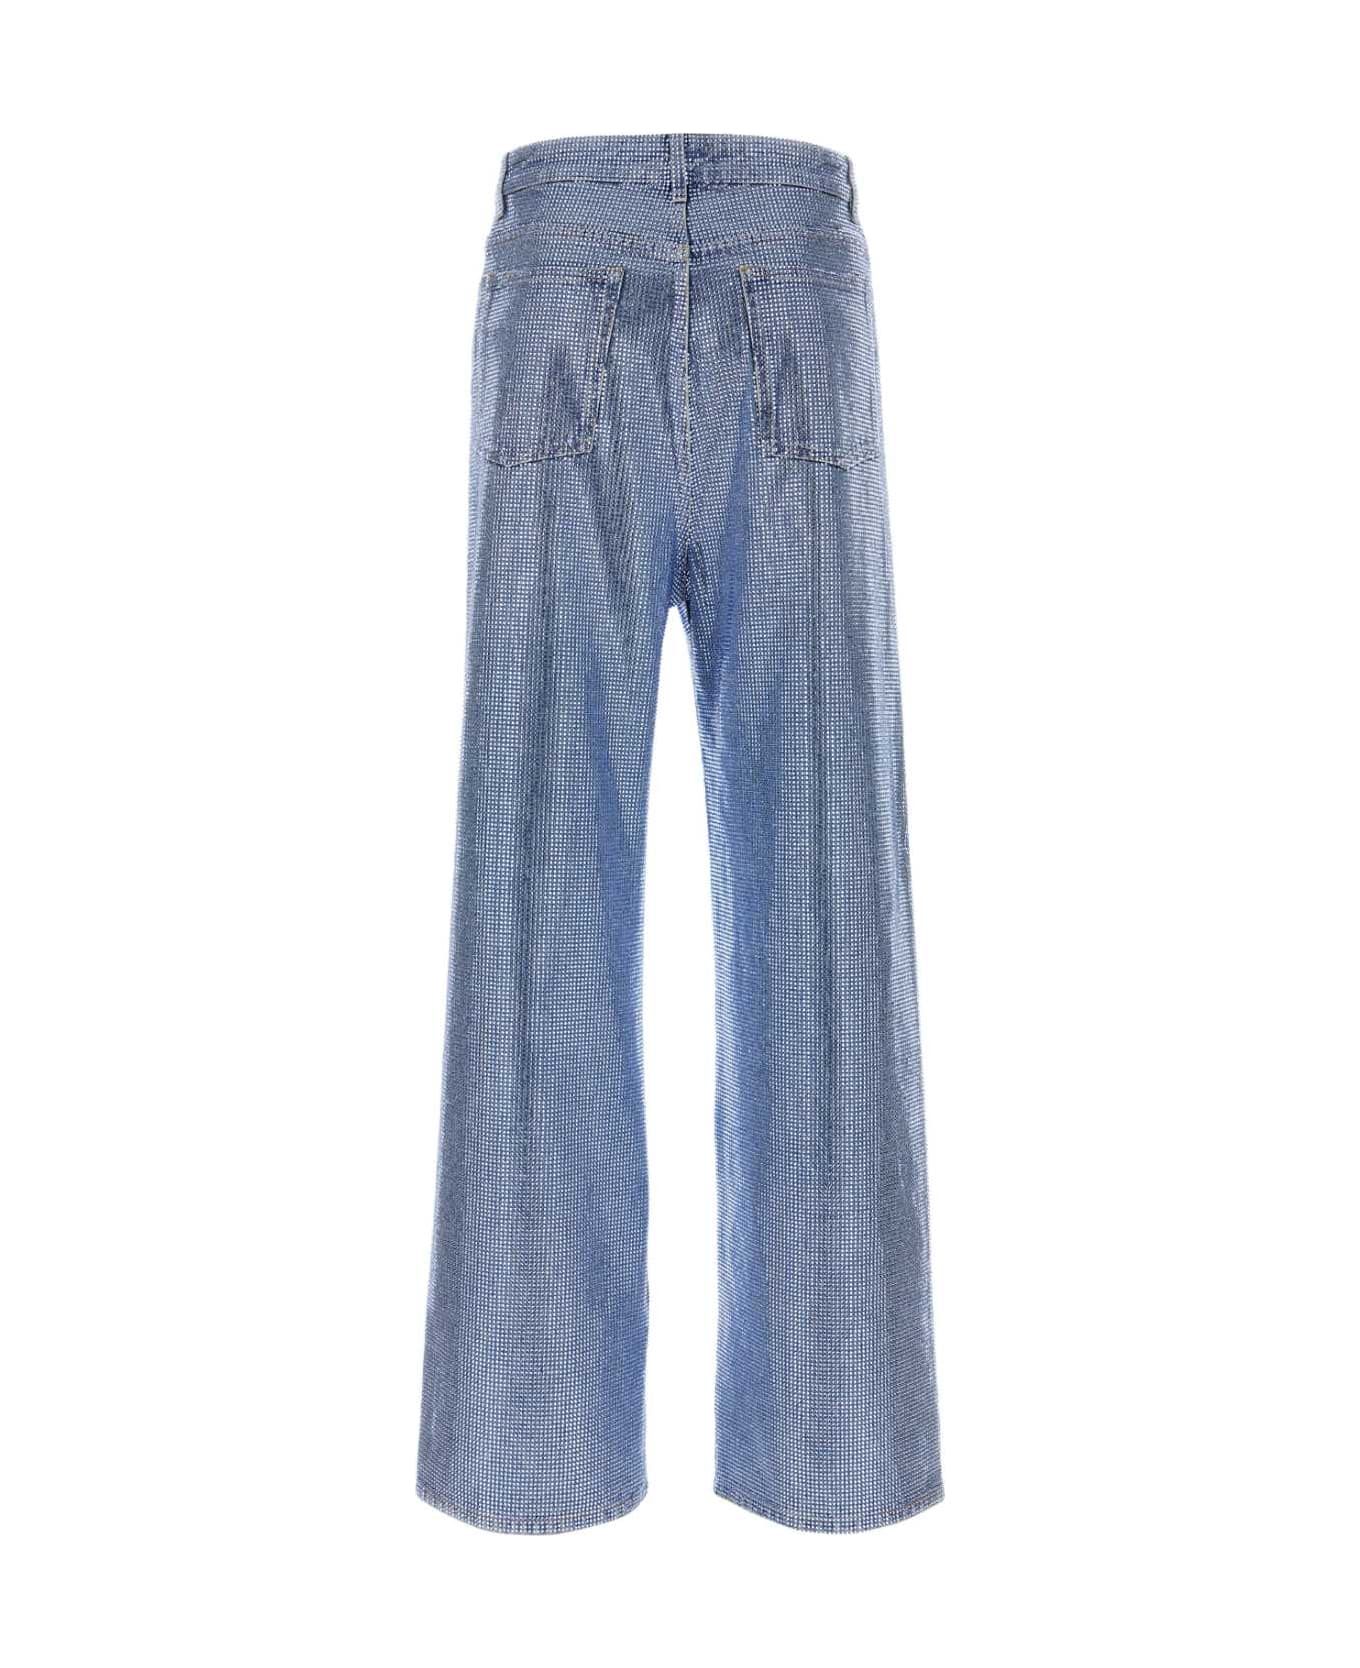 Loewe Embellished Denim Jeans - WASHEDDENIM